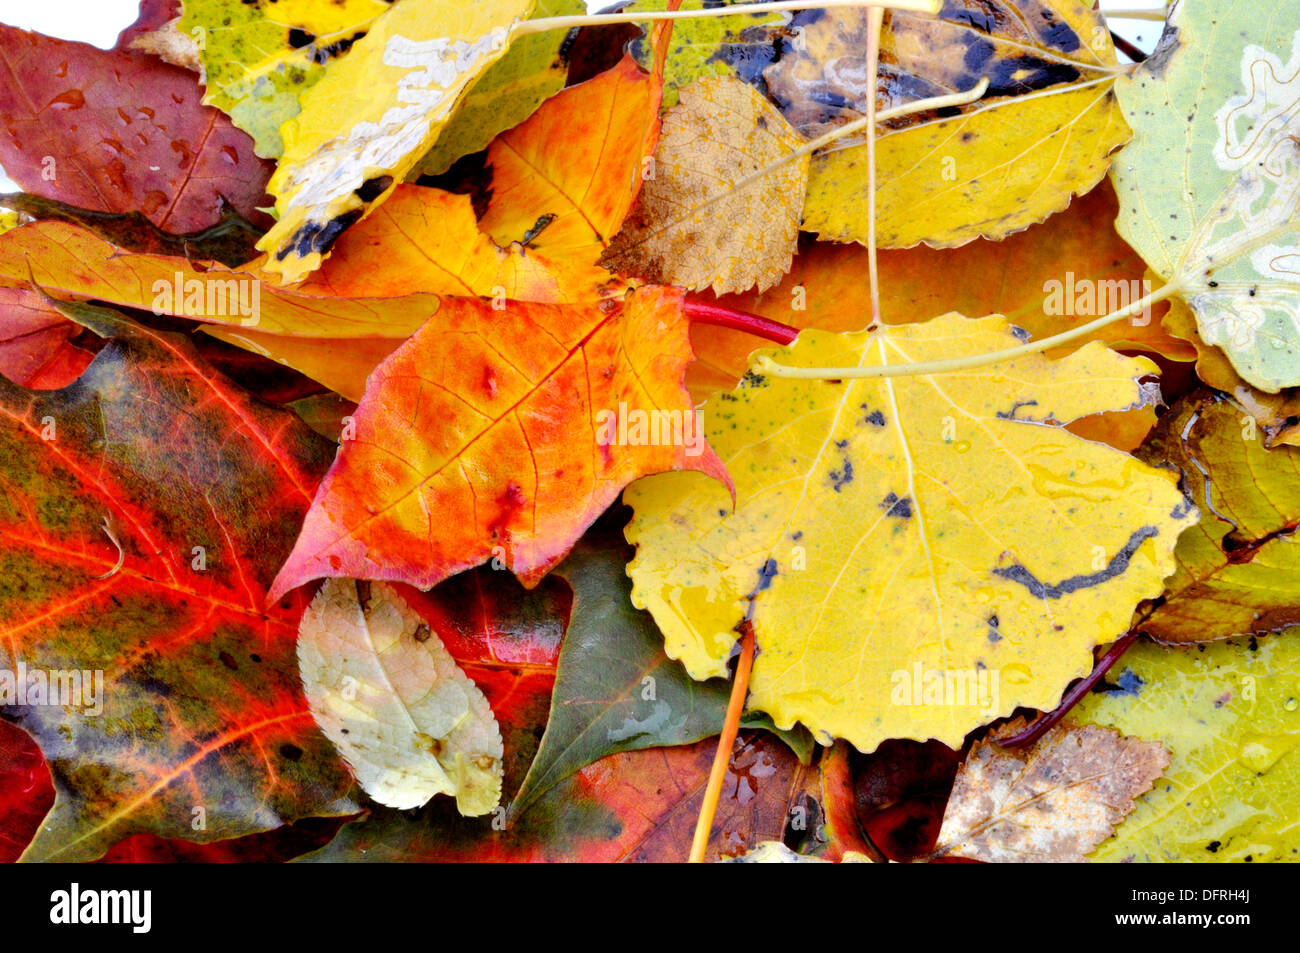 Les feuilles mortes aux couleurs de l'automne Banque D'Images